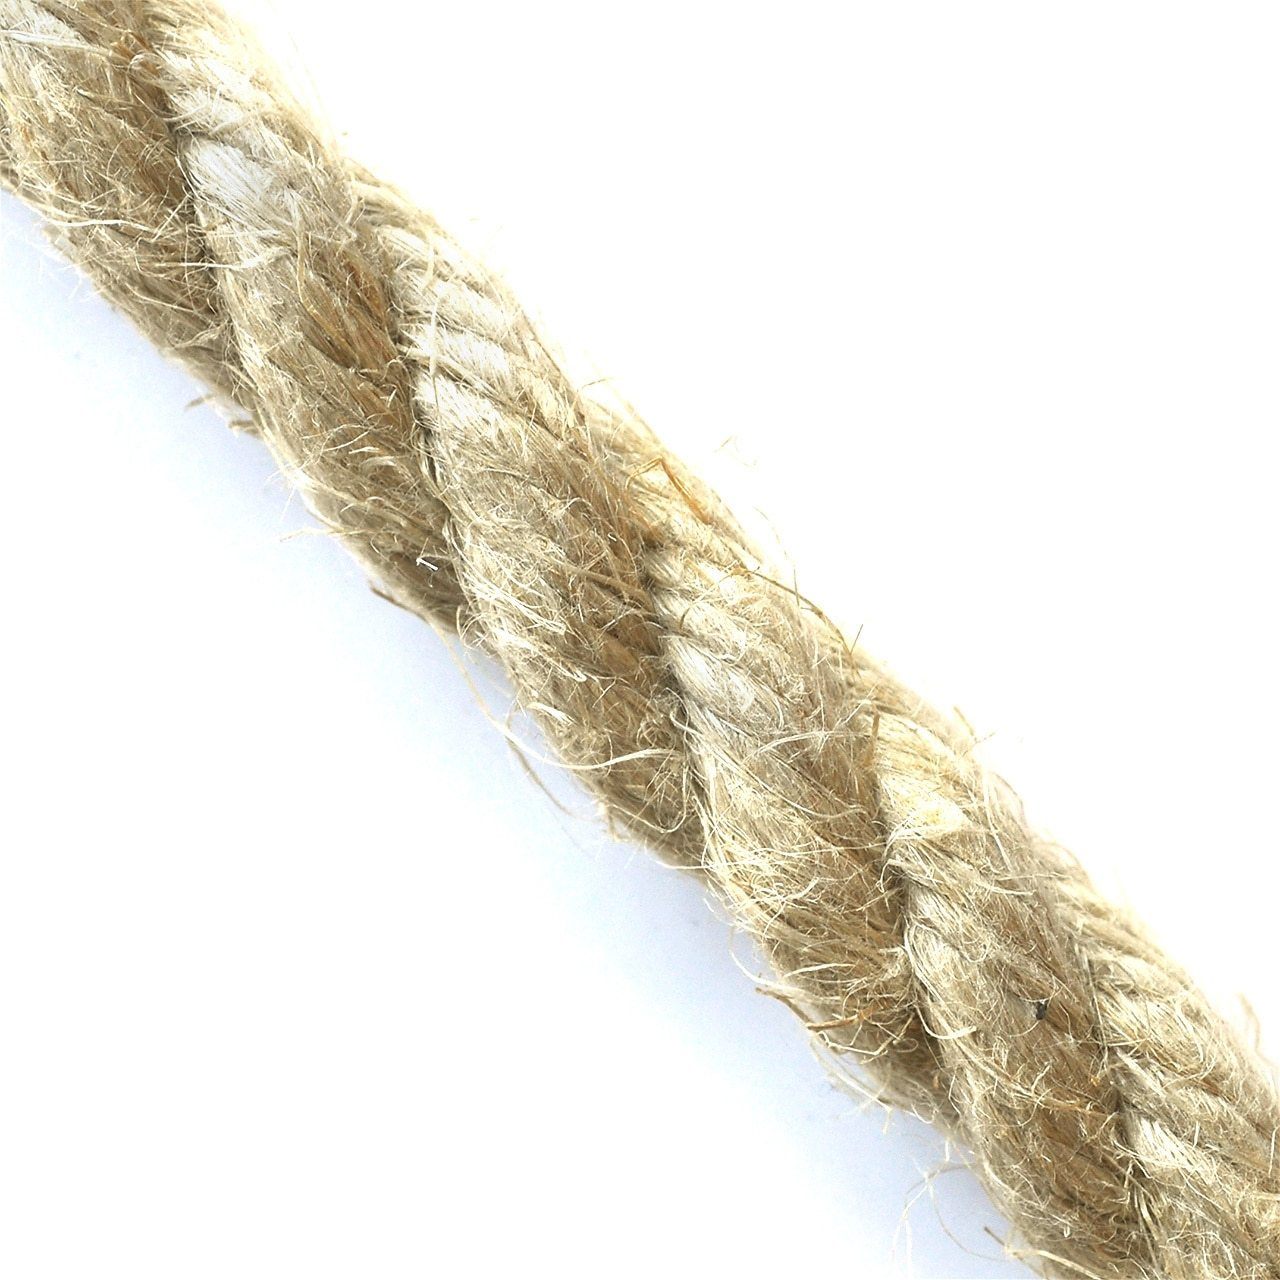 manila rope wholesale